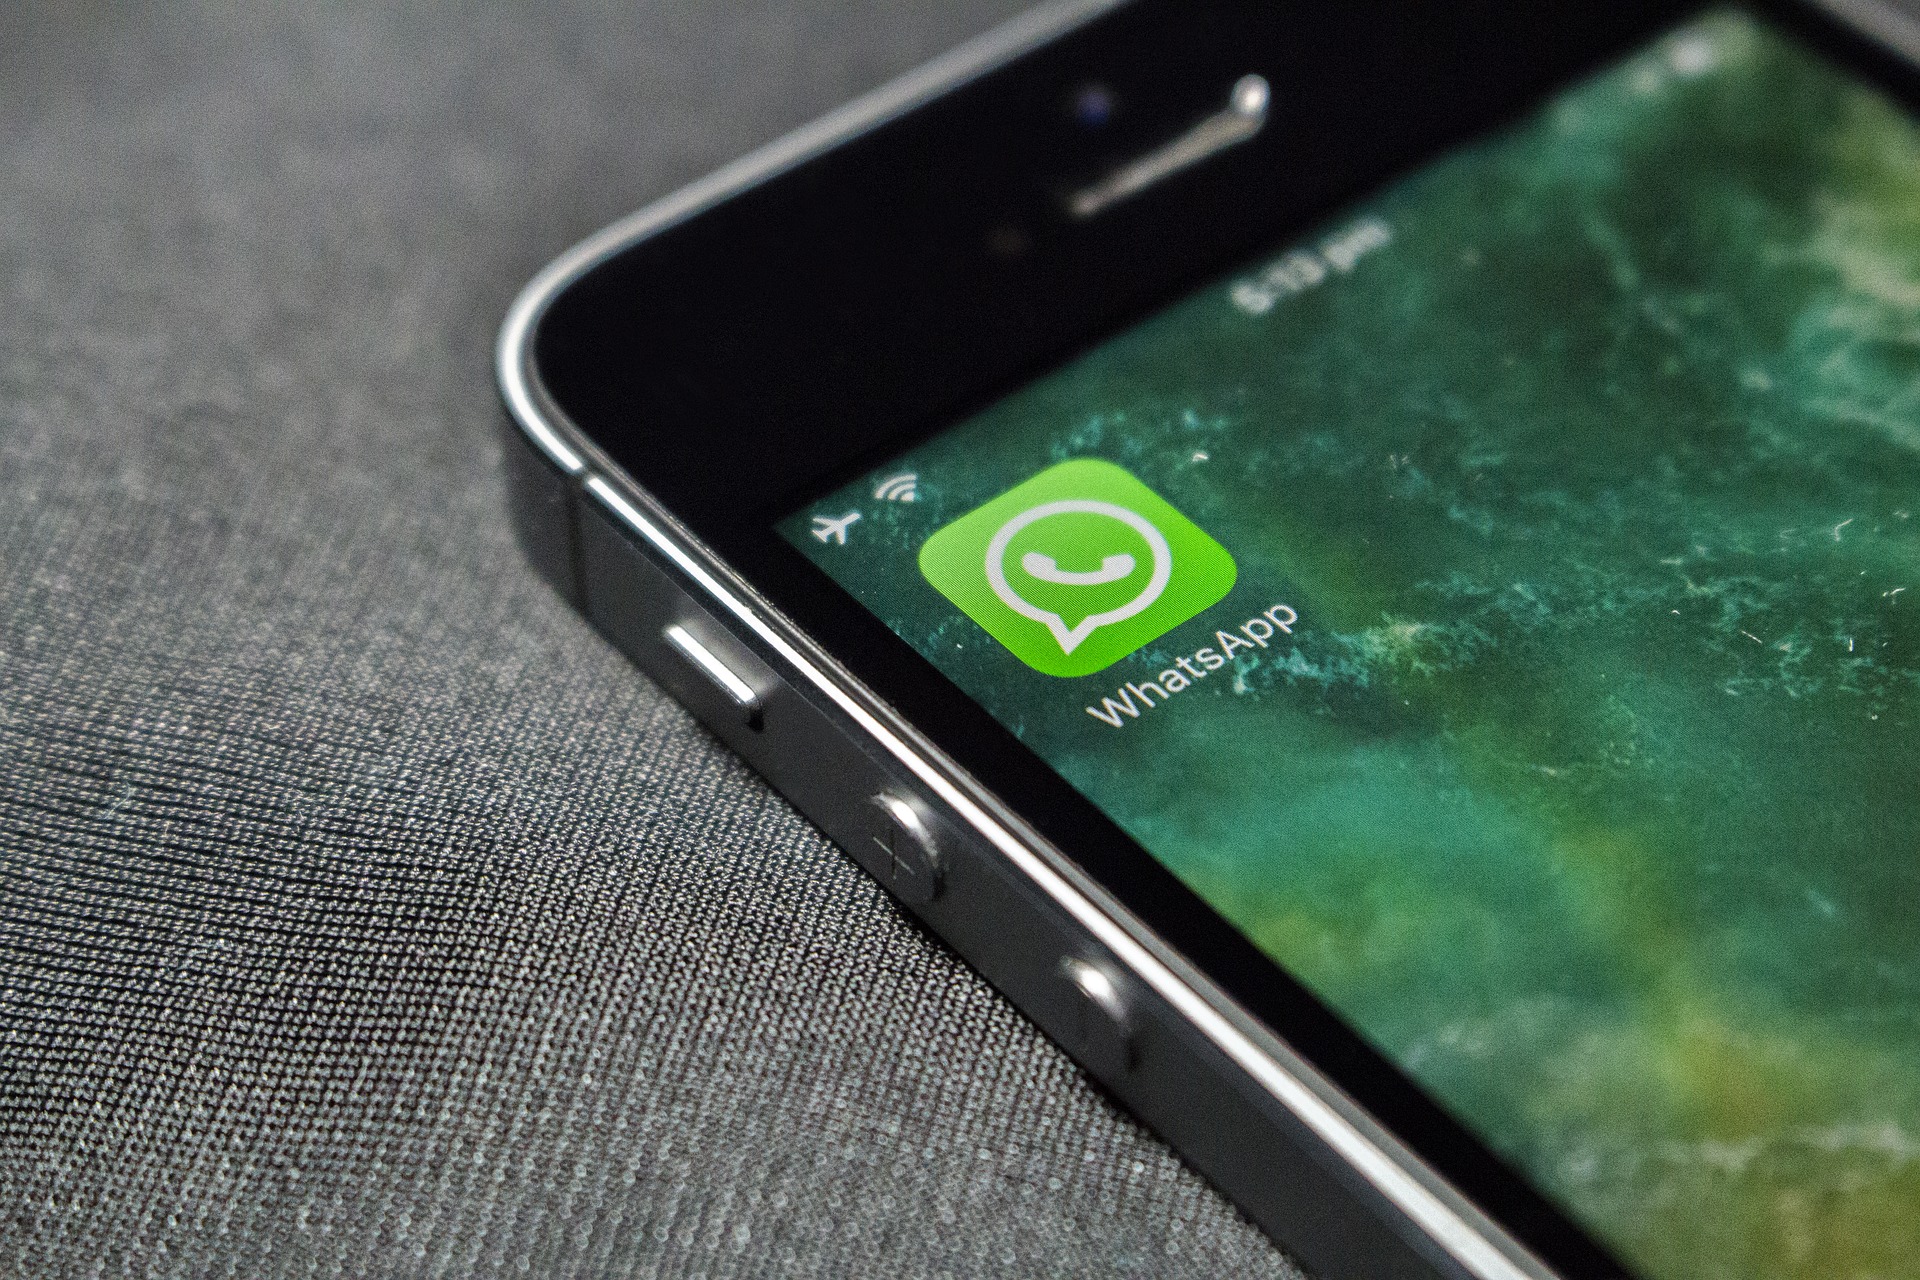  WhatsApp ne fonctionnera bientôt plus sur les téléphones sous Windows Phone